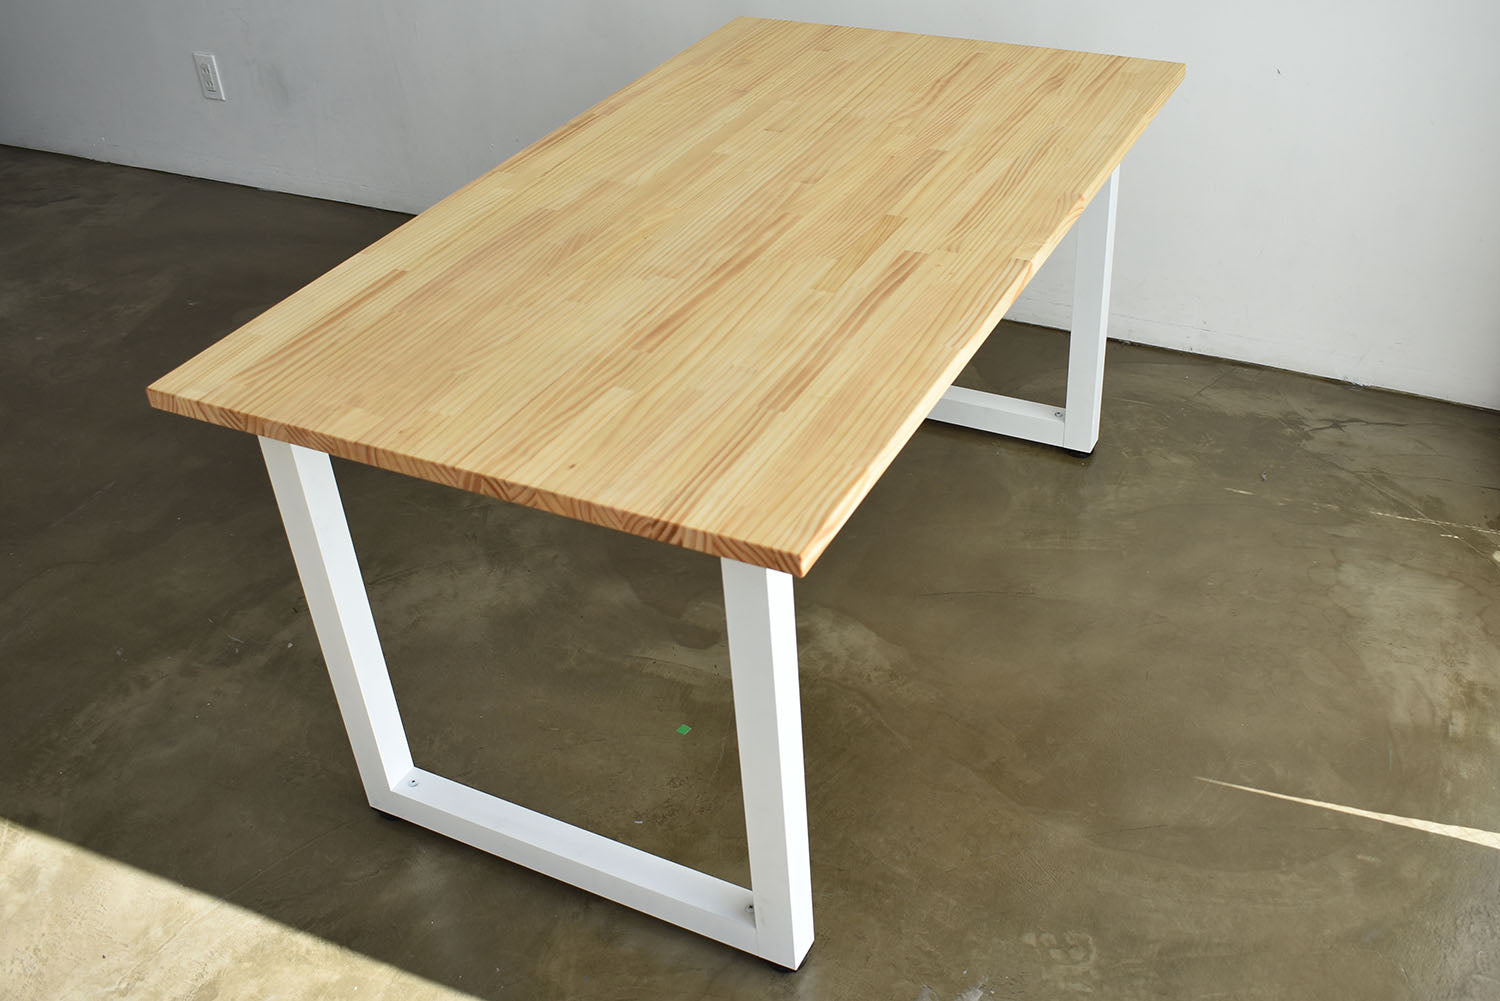 机 テーブル 作業台 天板パイン集成材  幅130cm ナチュラル×ホワイト